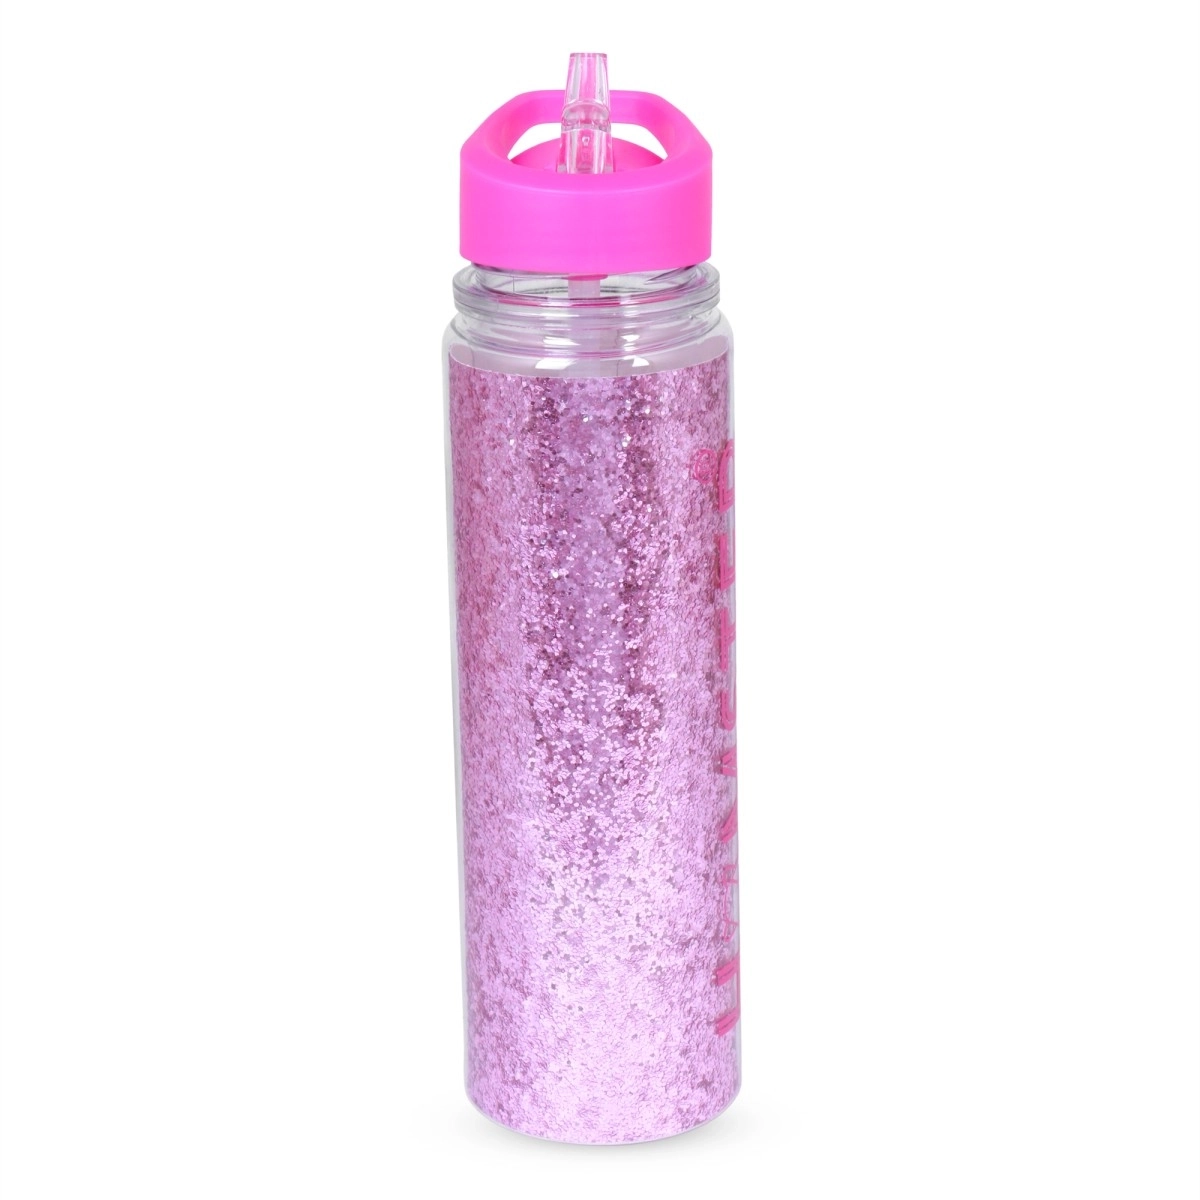 Hamster London Glitter Li Pink Bottle Pink 5Y+